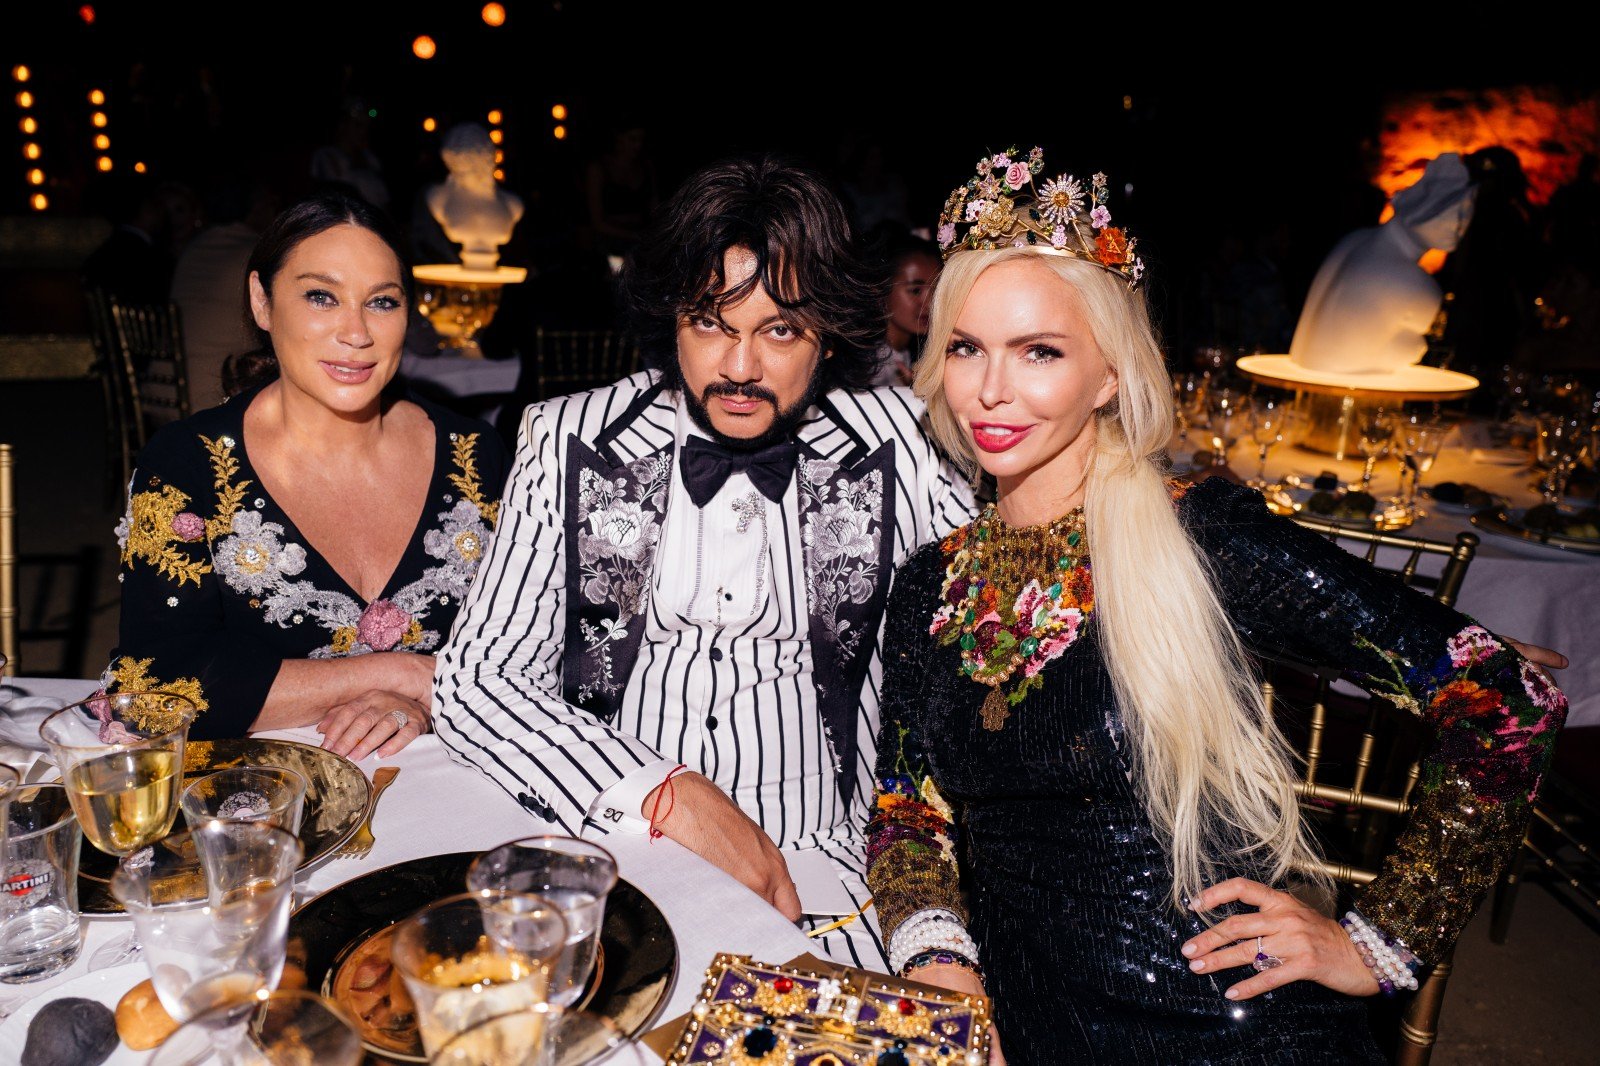 Филипп Киркоров и Алиса Лобанова посетили закрытый показ Dolce & Gabbana Alta Moda